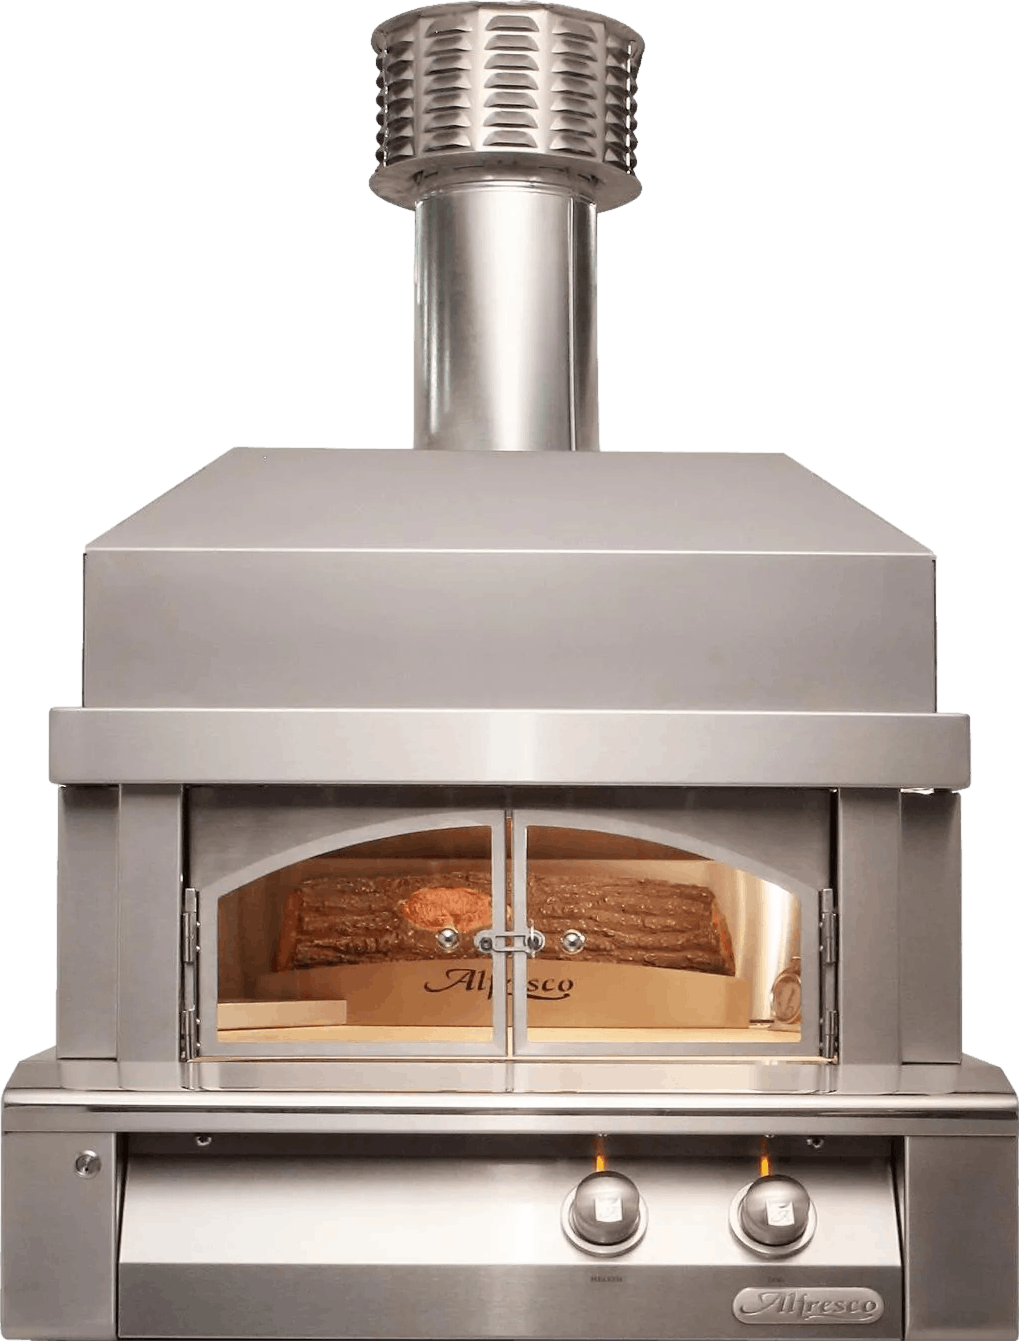 Alfresco Built-In Outdoor Gas Pizza Oven Plus